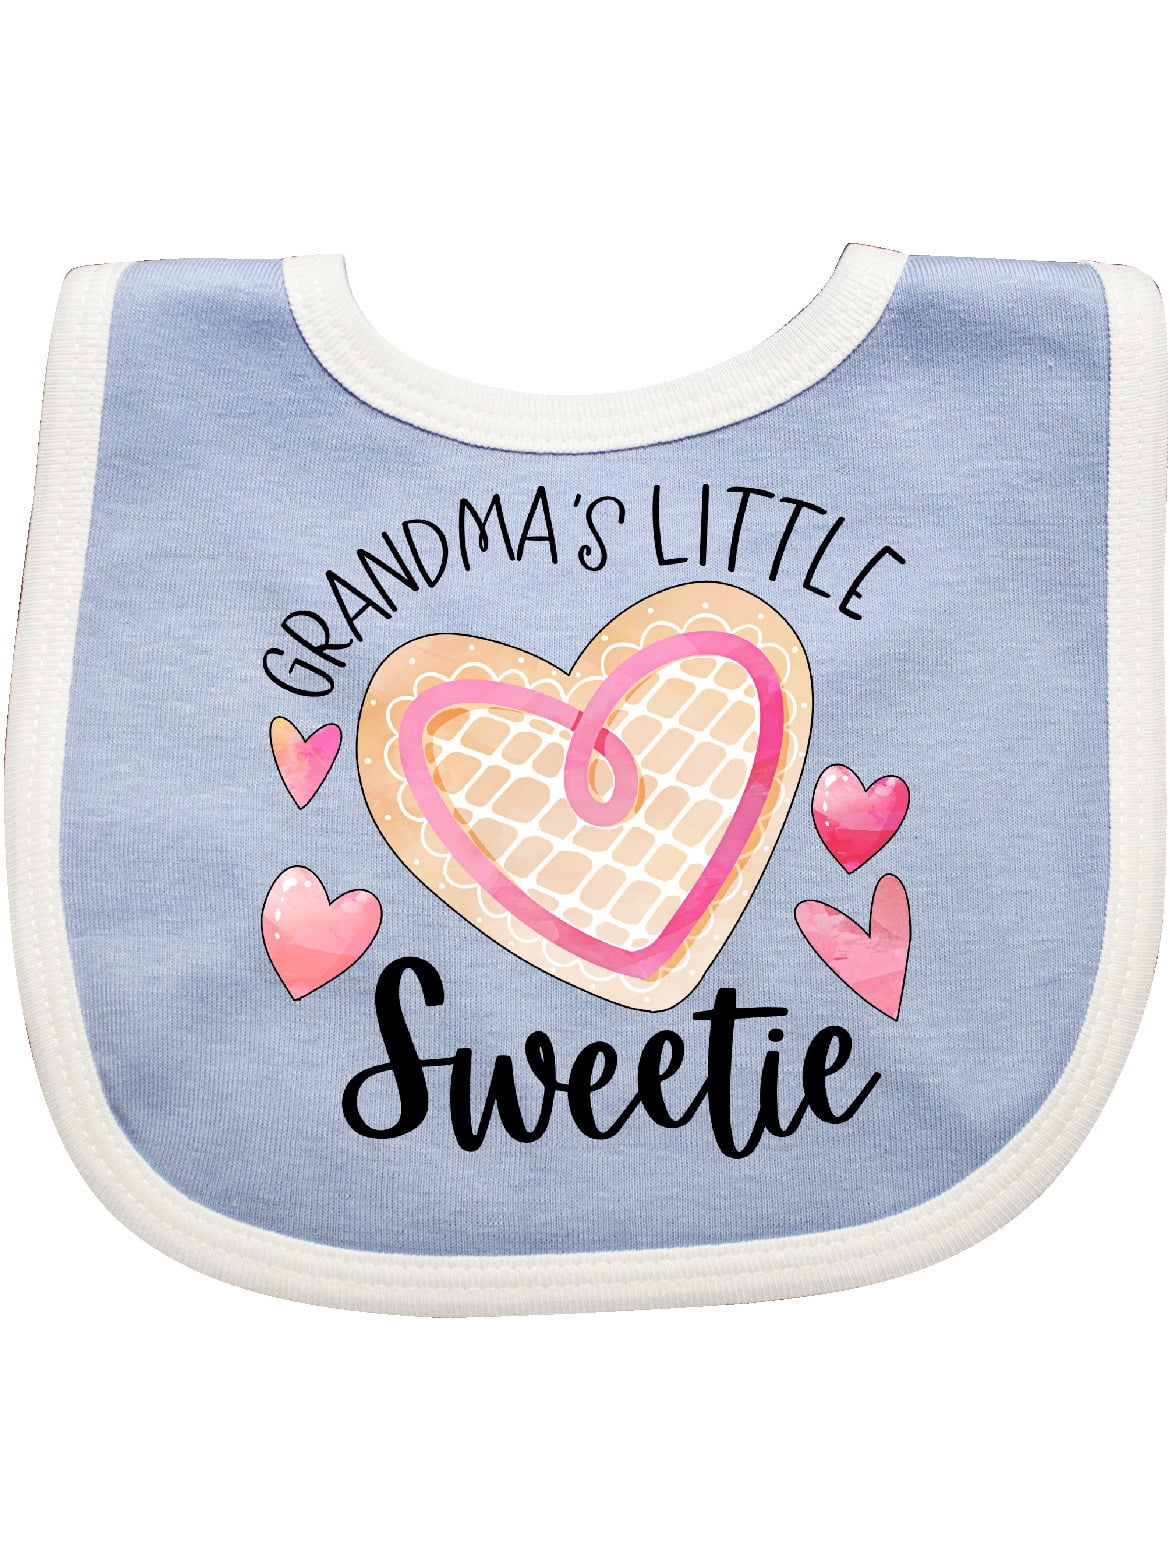 Grandma's Little Sweetie with Pink Heart Cookie Baby Bib - Walmart.com ...